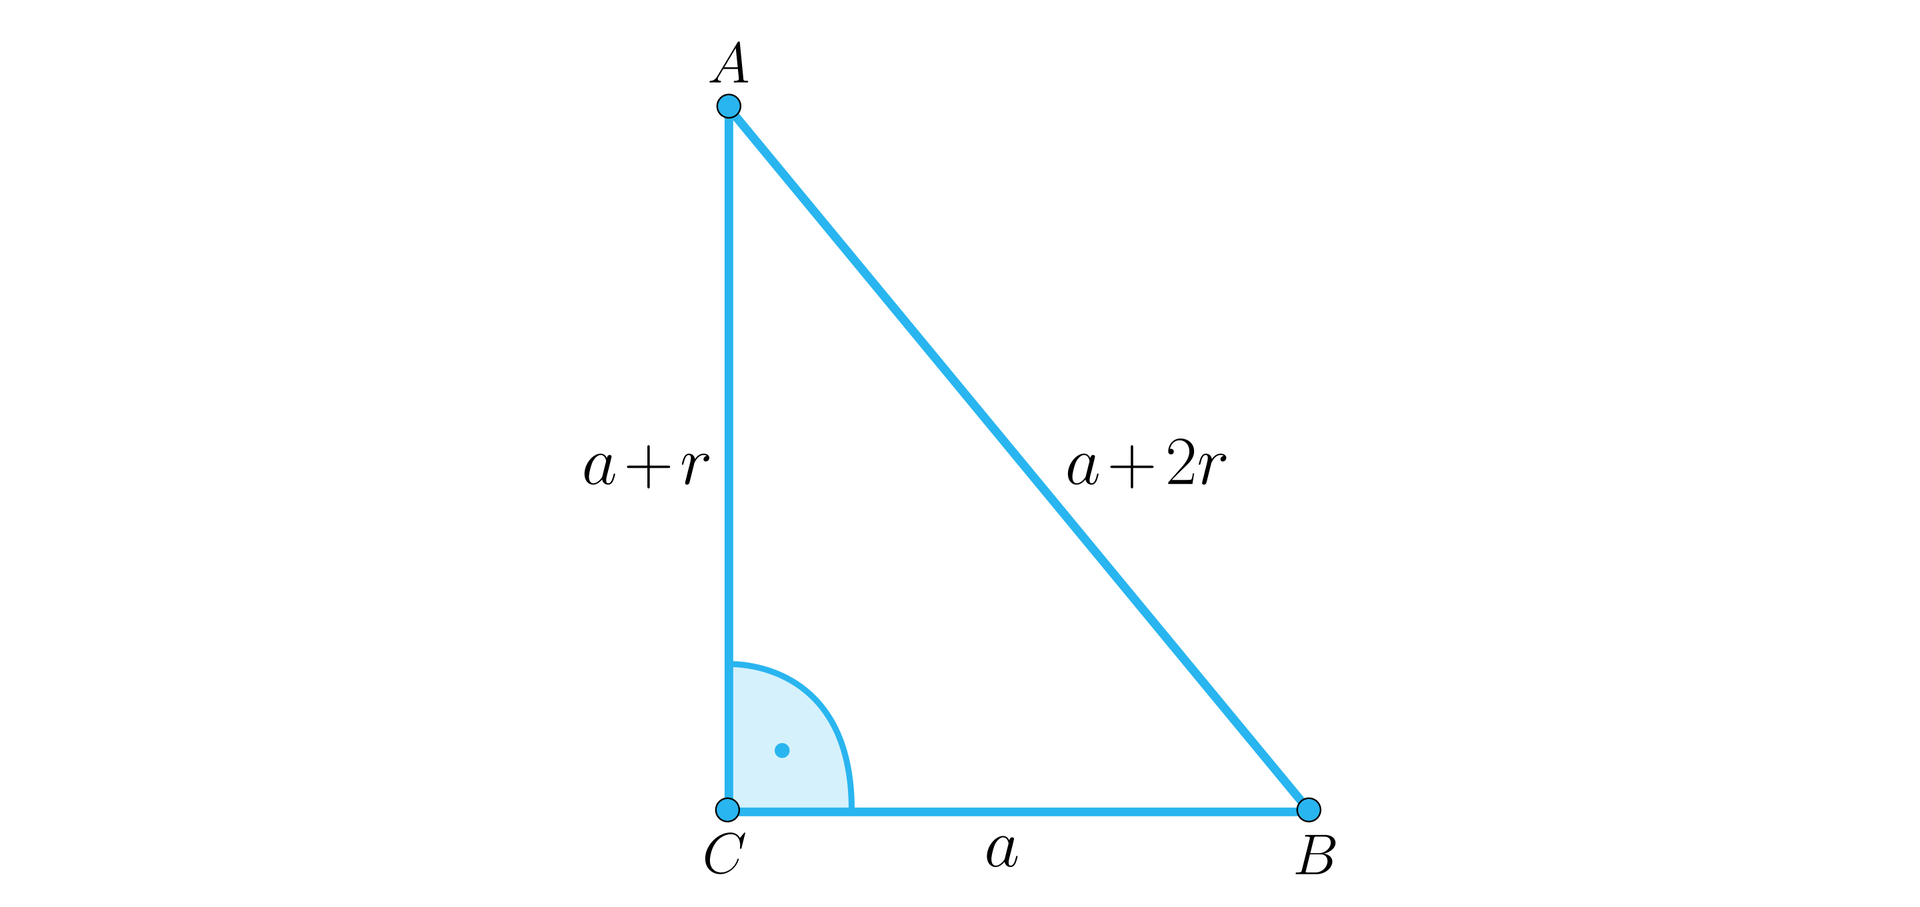 Ilustracja przedstawia trójkąt prostokątny ABC o podstawie a będącej jednocześnie odcinkiem CB przyprostokątnej a dodać r będącej odcinkiem AC oraz przeciwprostokątnej a dodać 2r będącej odcinkiem AB. Przy wierzchołku C oznaczono kąt prosty.